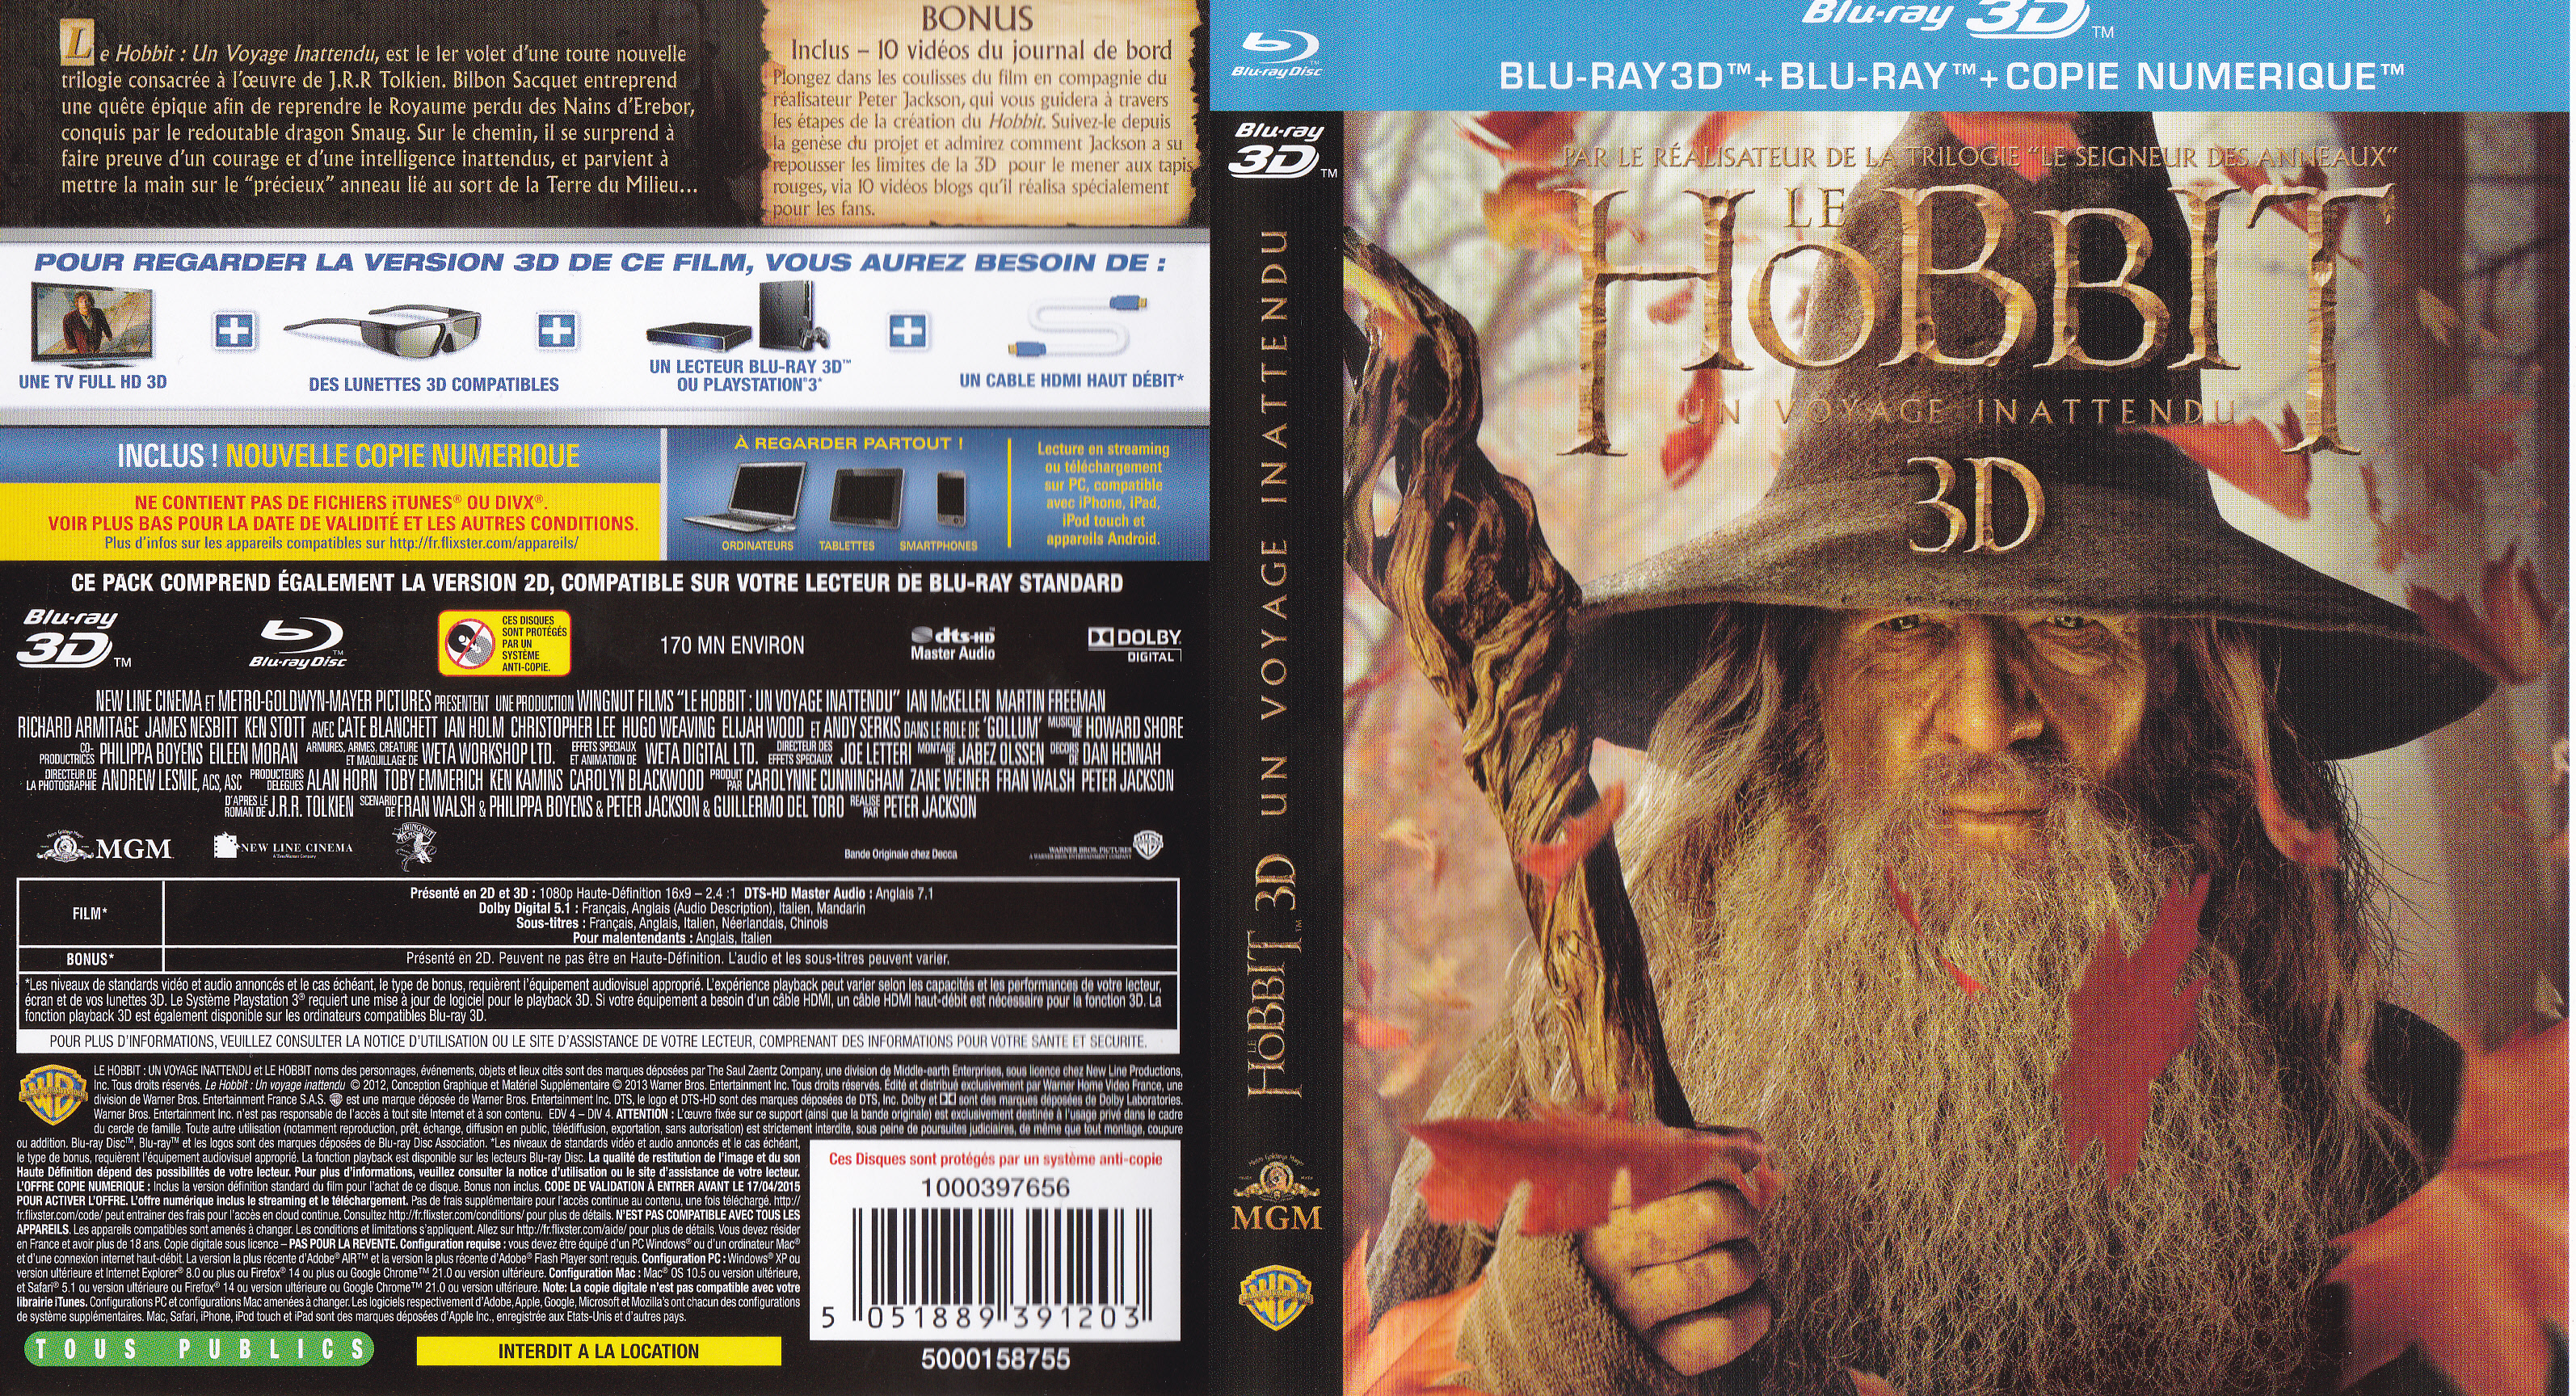 Jaquette DVD Le Hobbit un voyage inattendu (BLU-RAY) v4